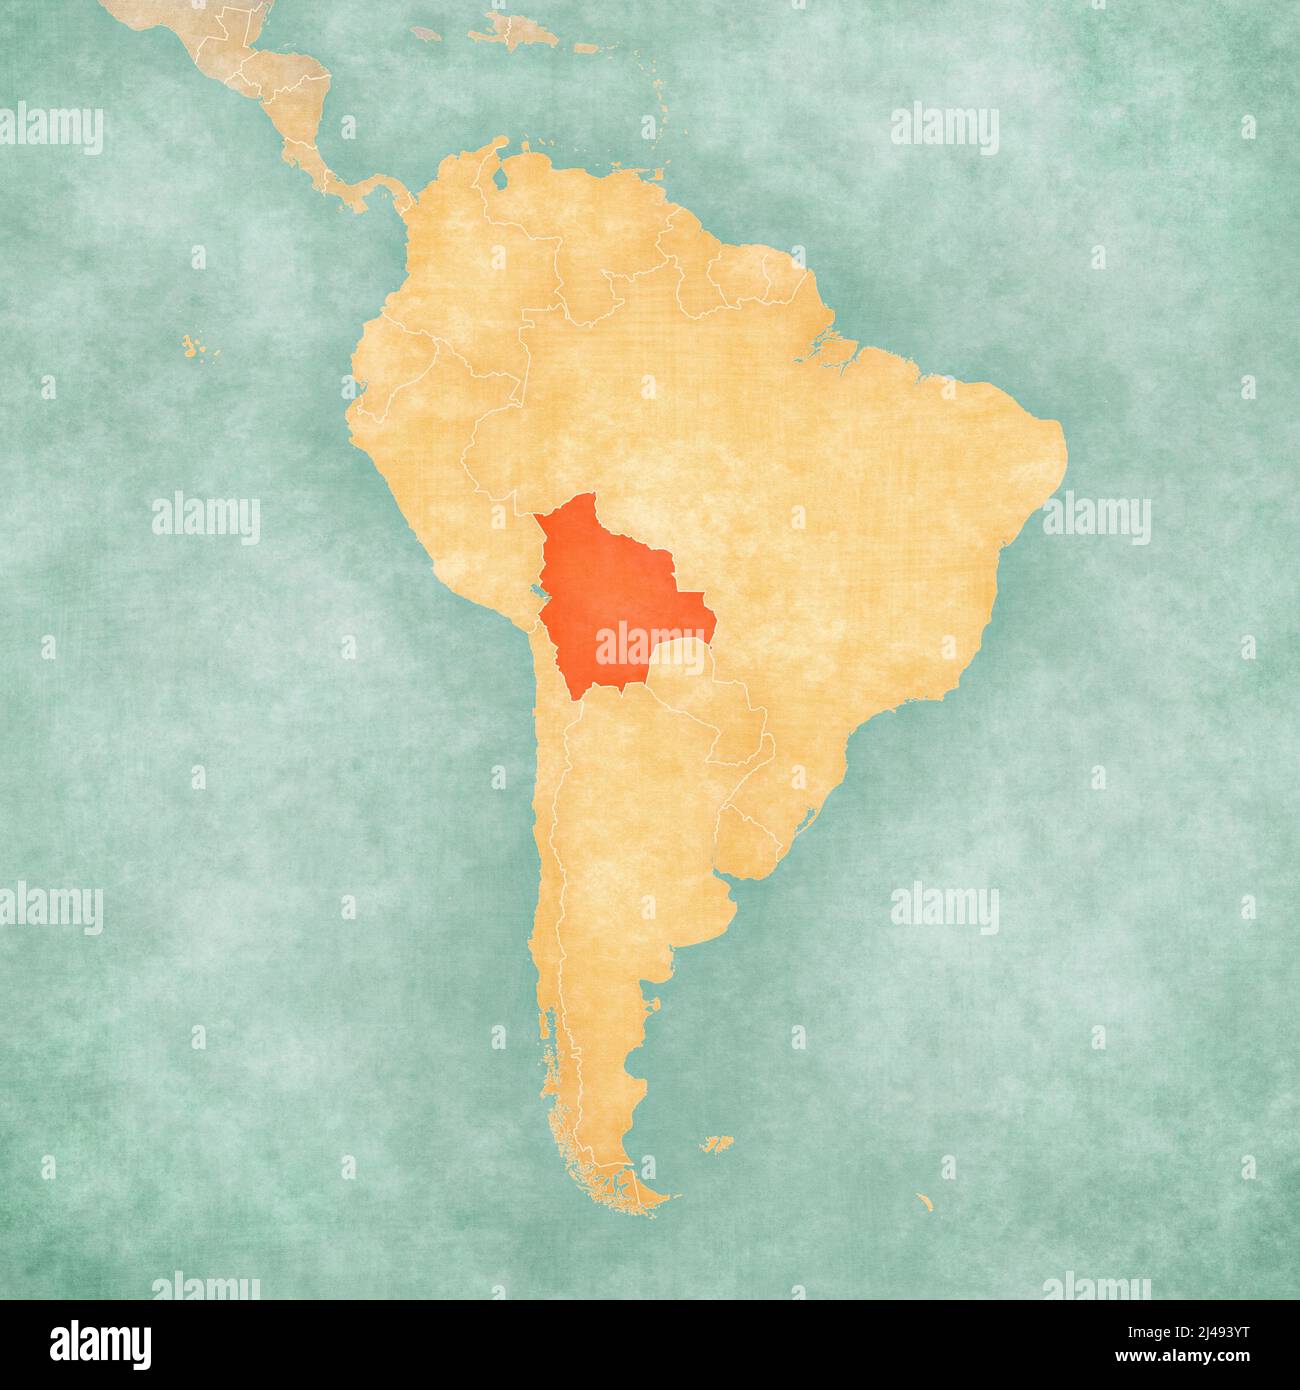 La Bolivie sur la carte de l'Amérique du Sud dans le grunge doux et le style vintage, comme le vieux papier avec aquarelle peinture. Banque D'Images